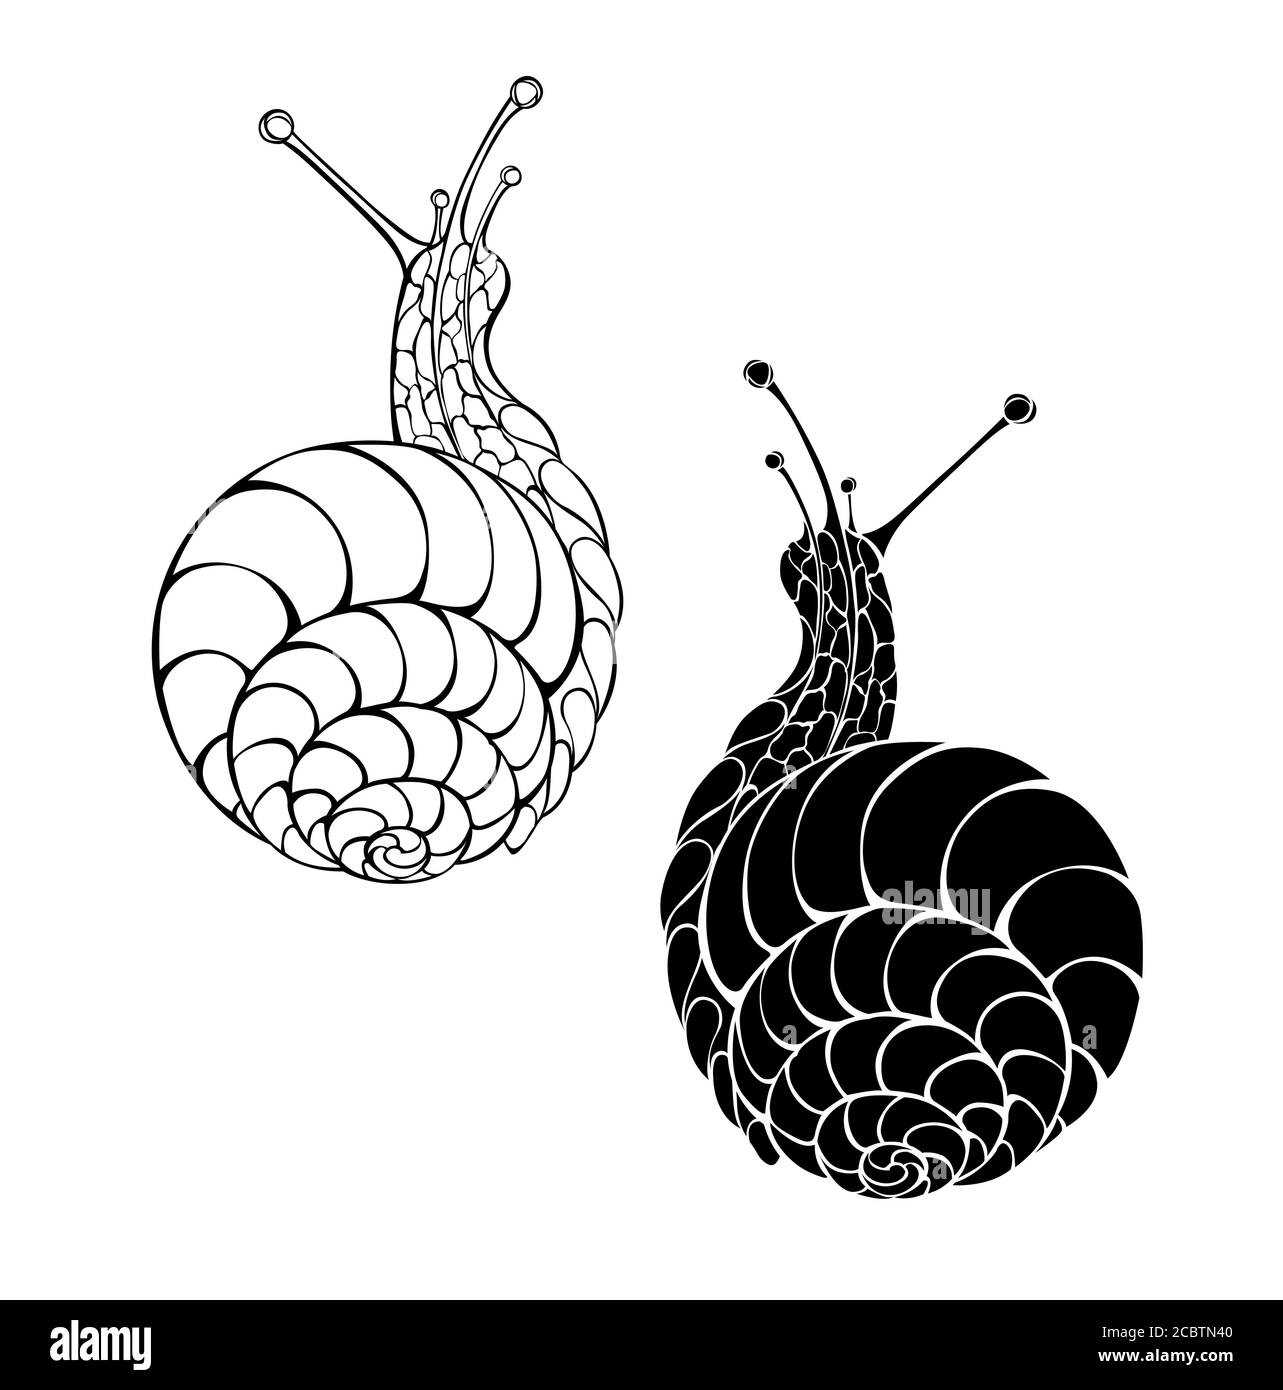 Deux, artistiquement dessinés, noirs, contour, silhouette, escargots isolés sur fond blanc. Illustration de Vecteur